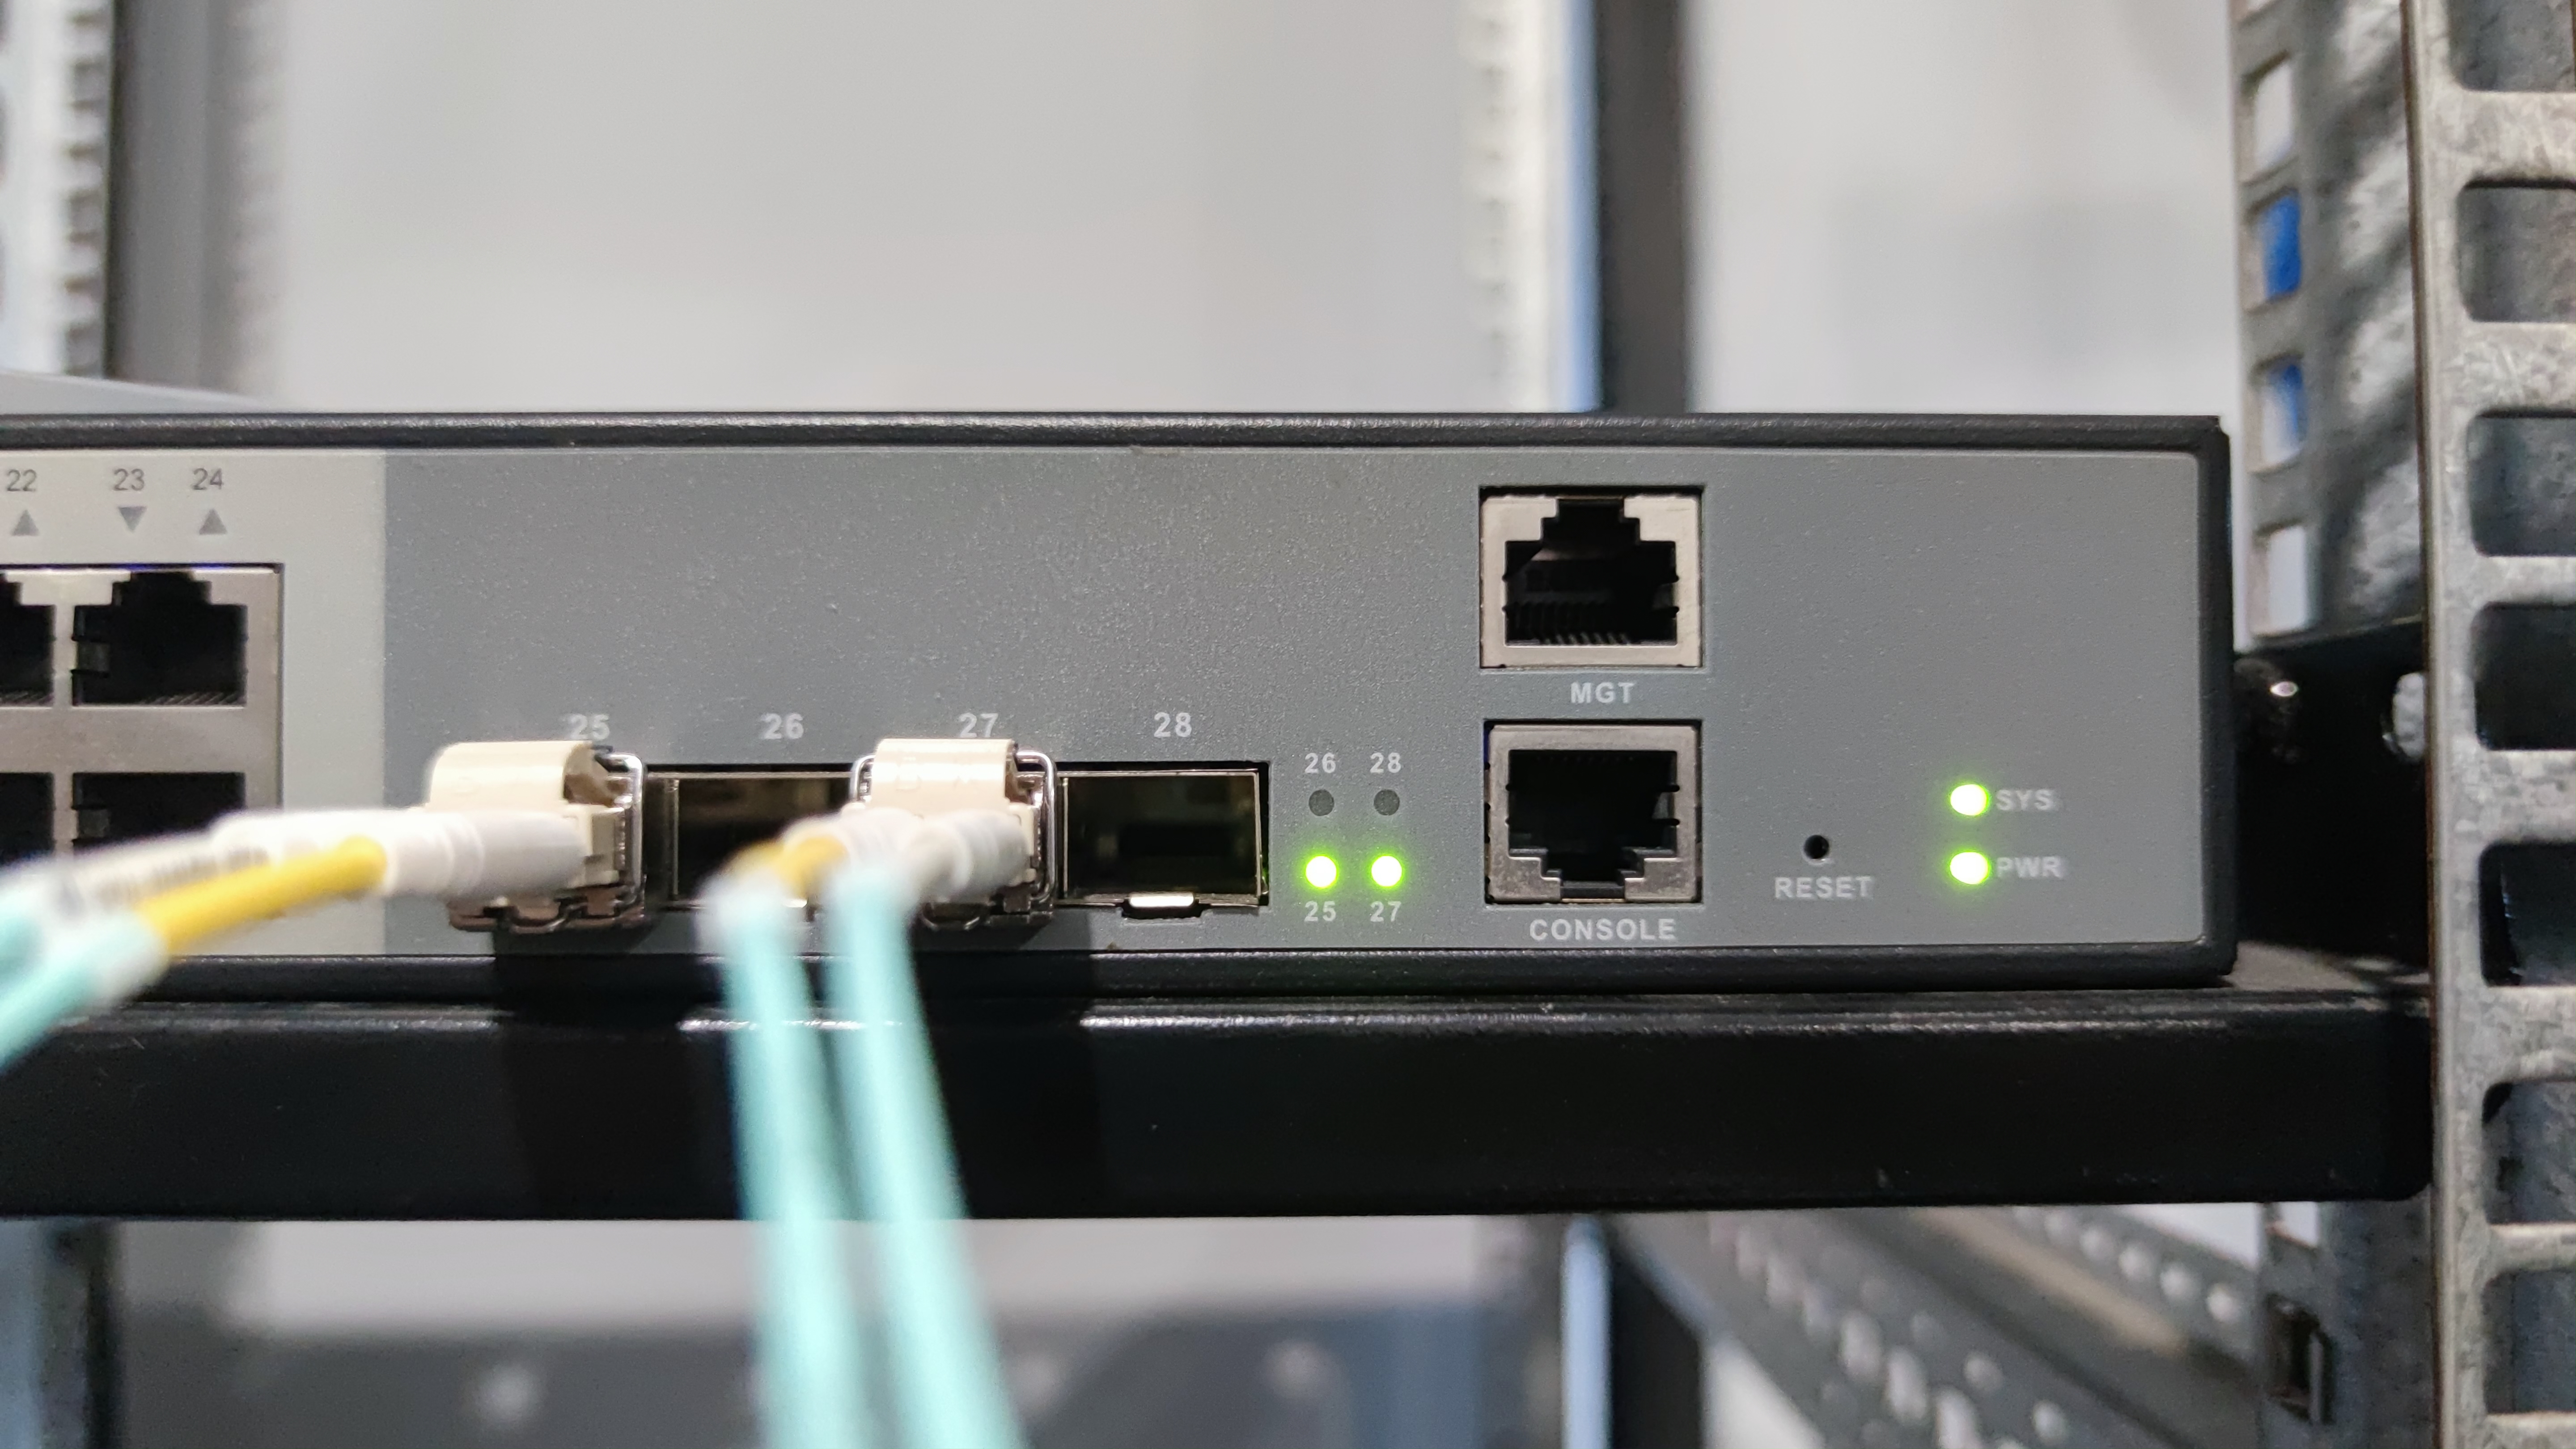 24-Port Gigabit Switch with 4 x 10Gb SFP+ Uplinks, S3900-24T4S 